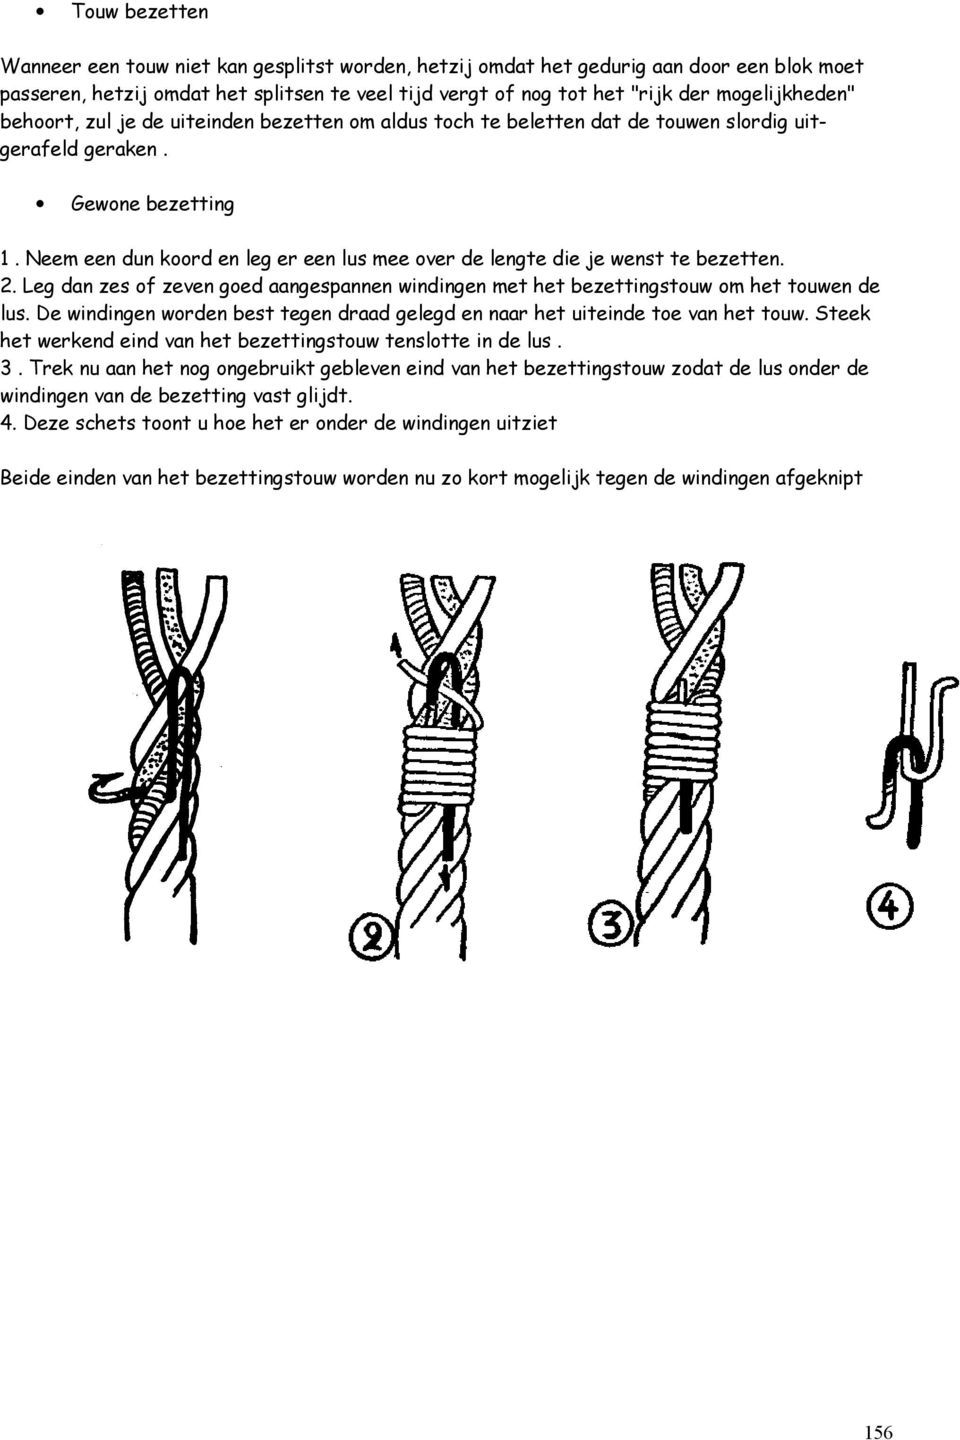 Neem een dun koord en leg er een lus mee over de lengte die je wenst te bezetten. 2. Leg dan zes of zeven goed aangespannen windingen met het bezettingstouw om het touwen de lus.